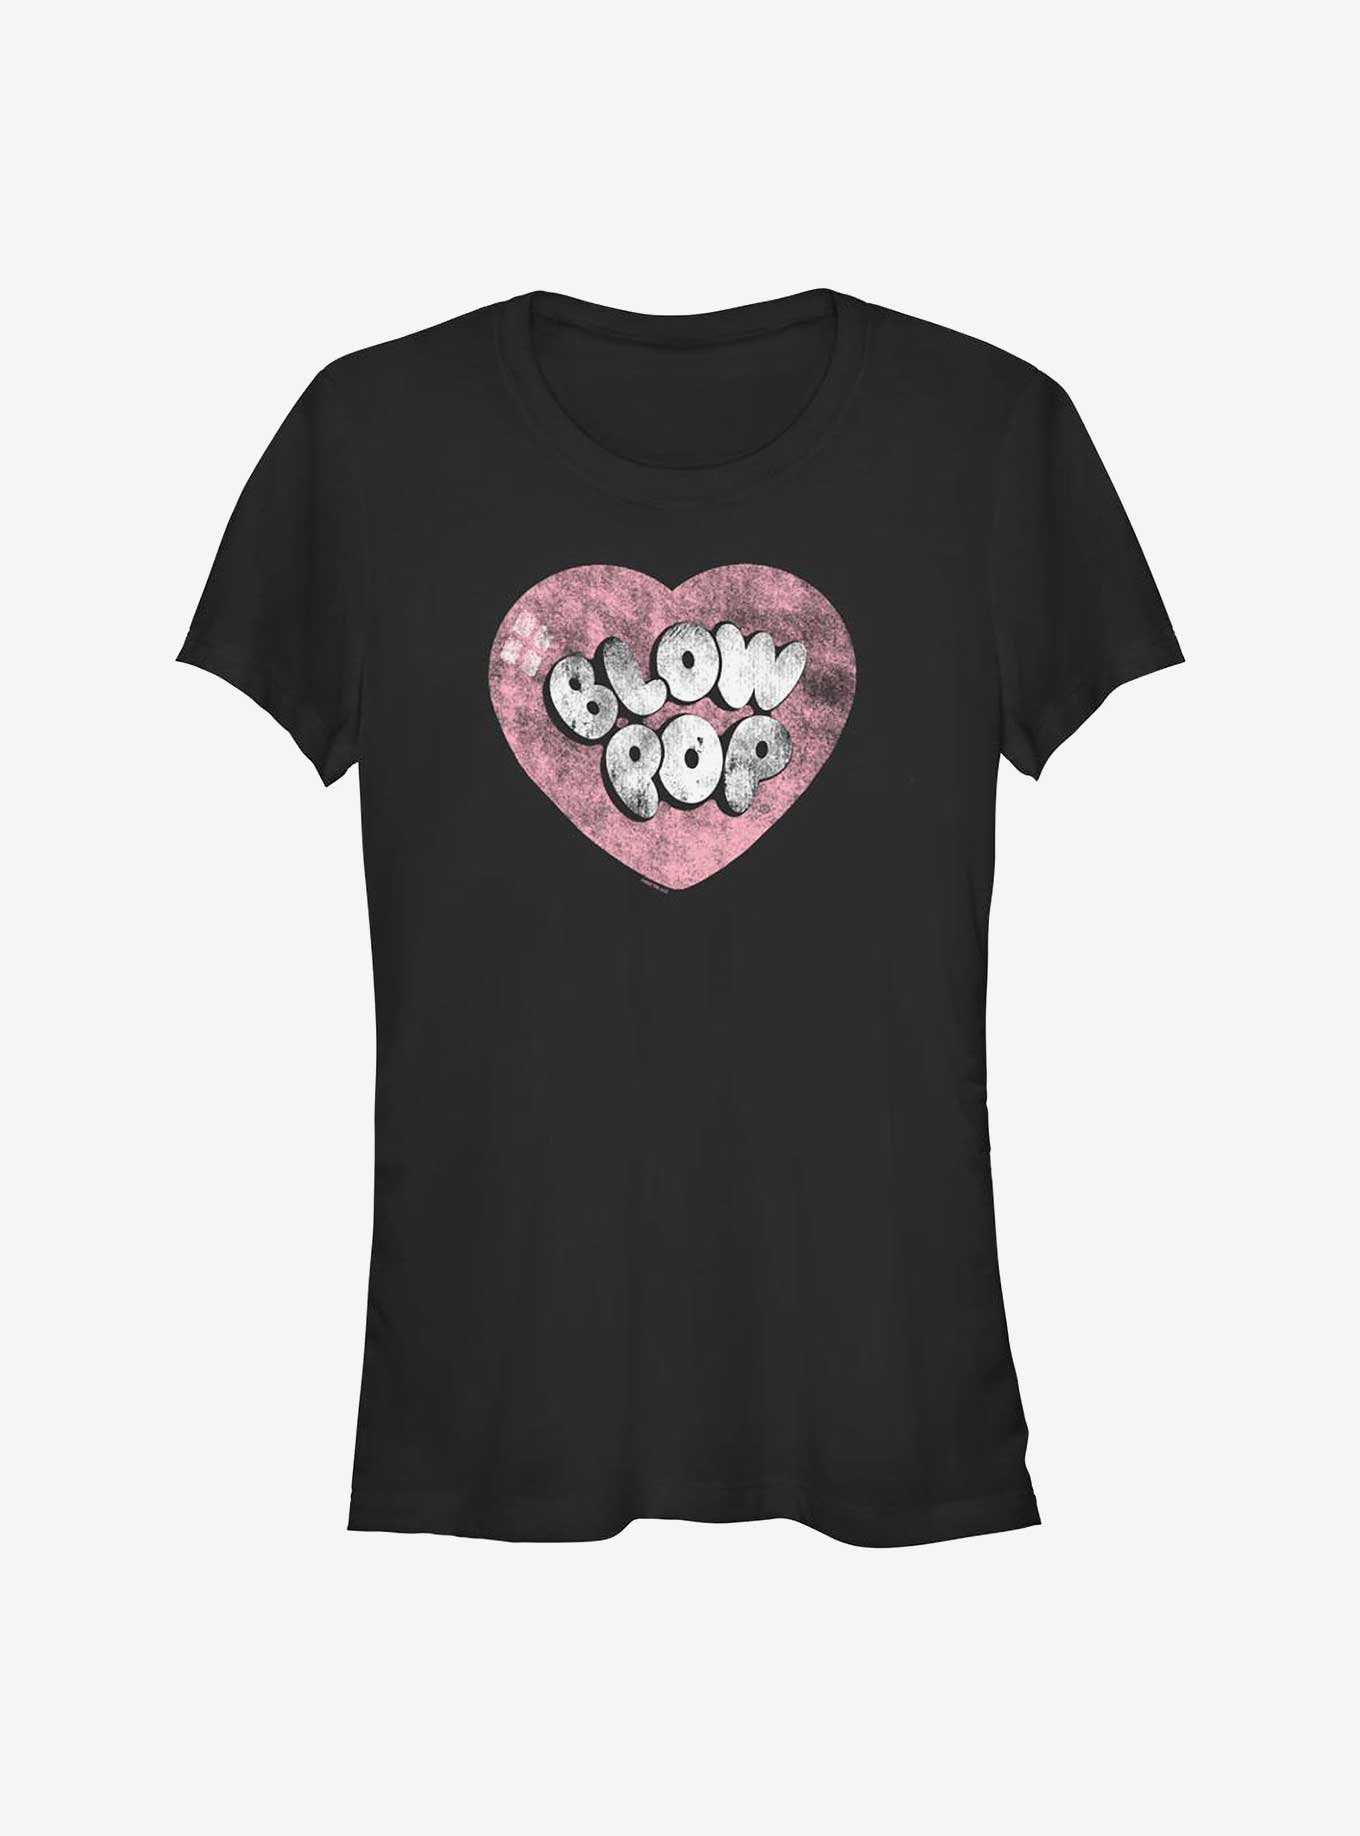 Tootsie Roll Blow Pop Heart Girls T-Shirt, , hi-res